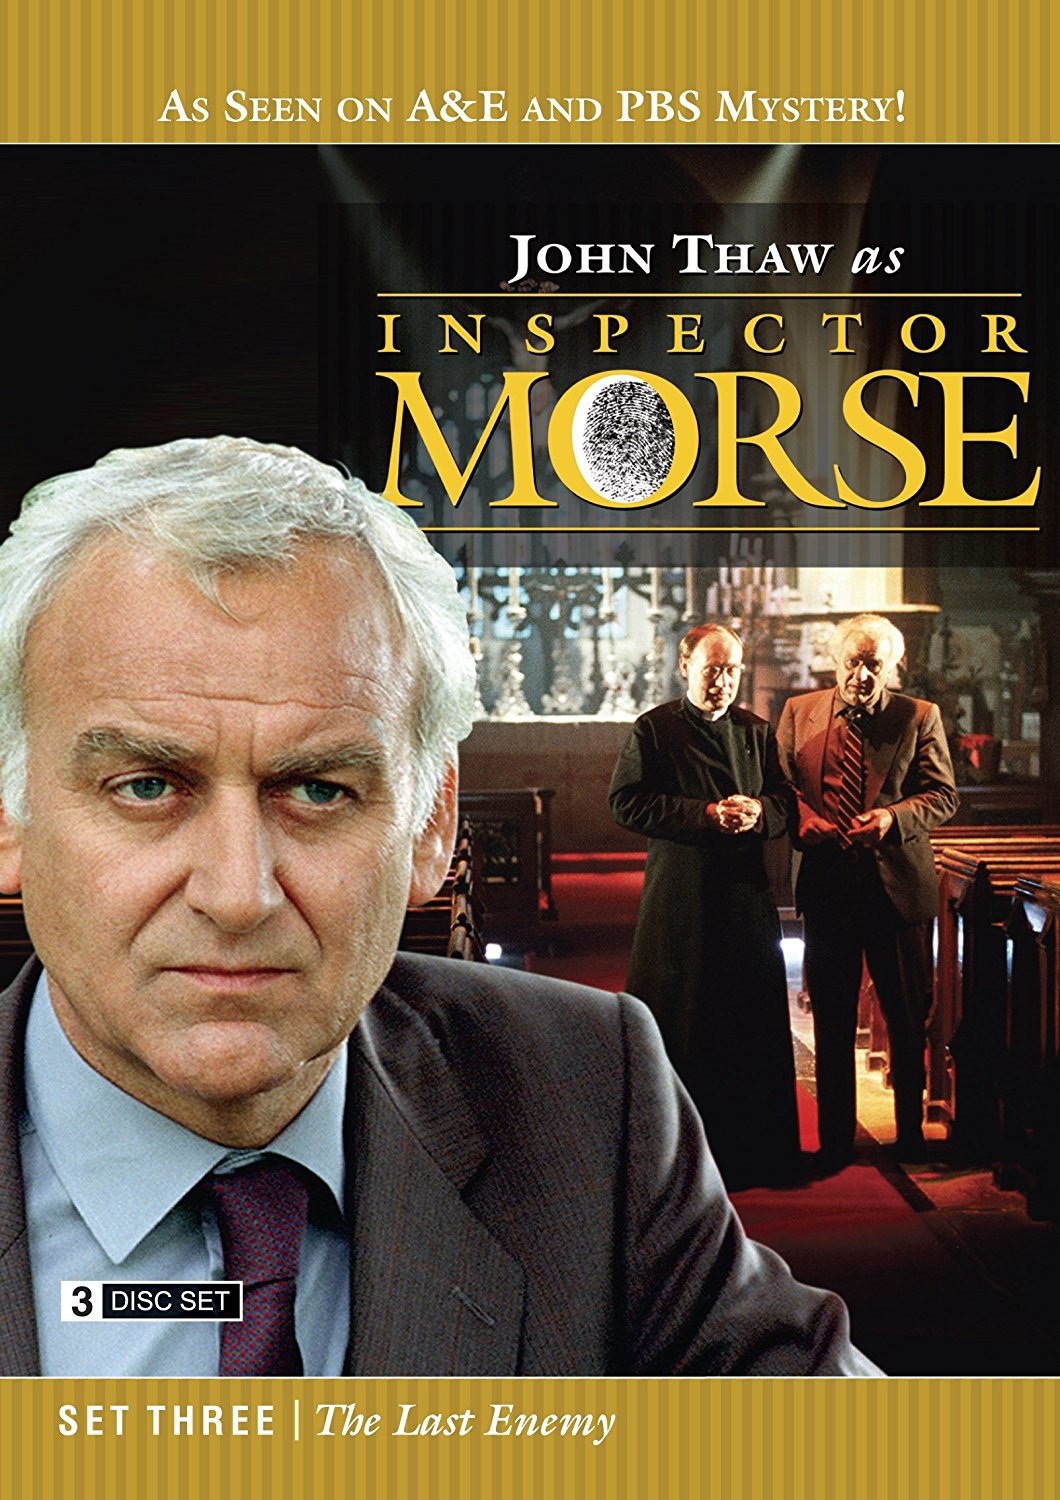 John Thaw as Inspector Morse